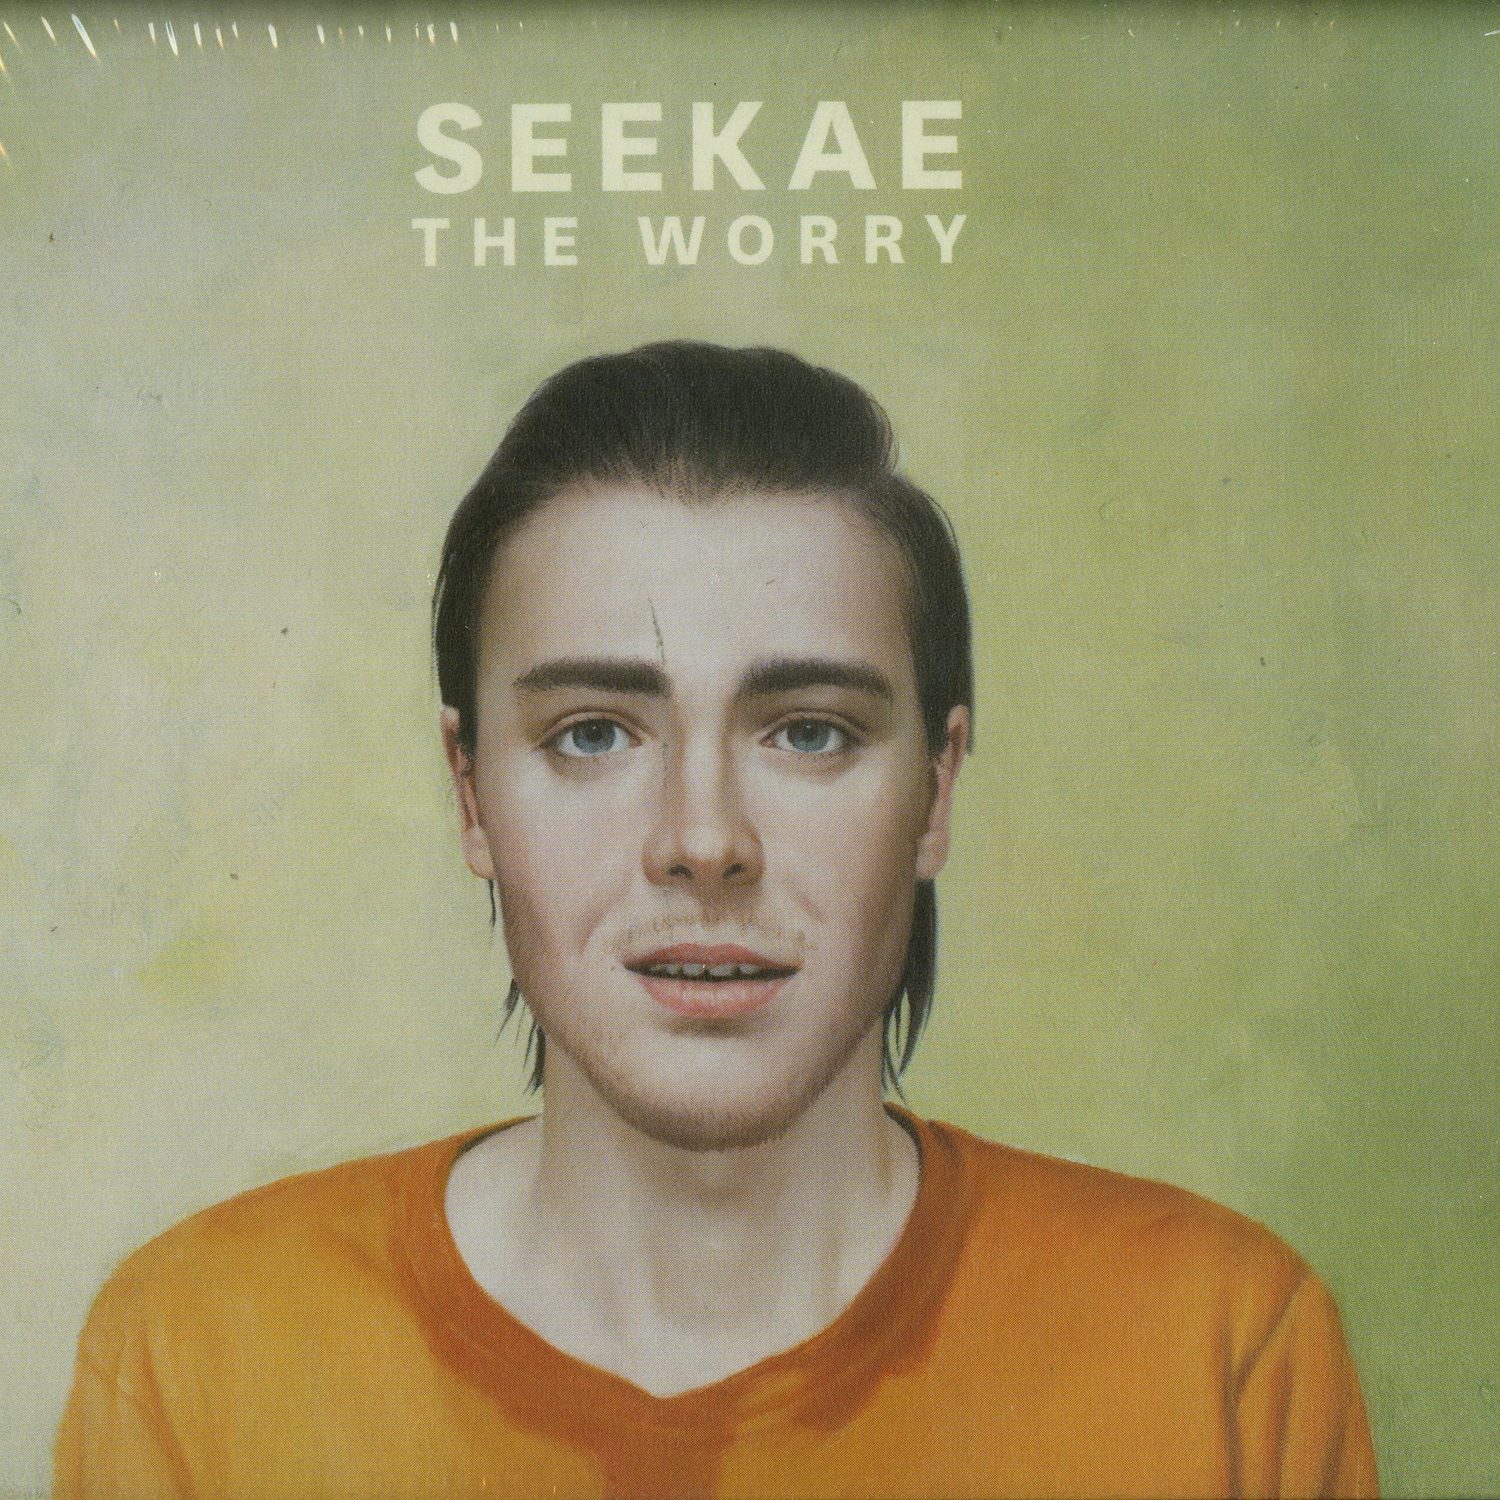 Seekae - THE WORRY 